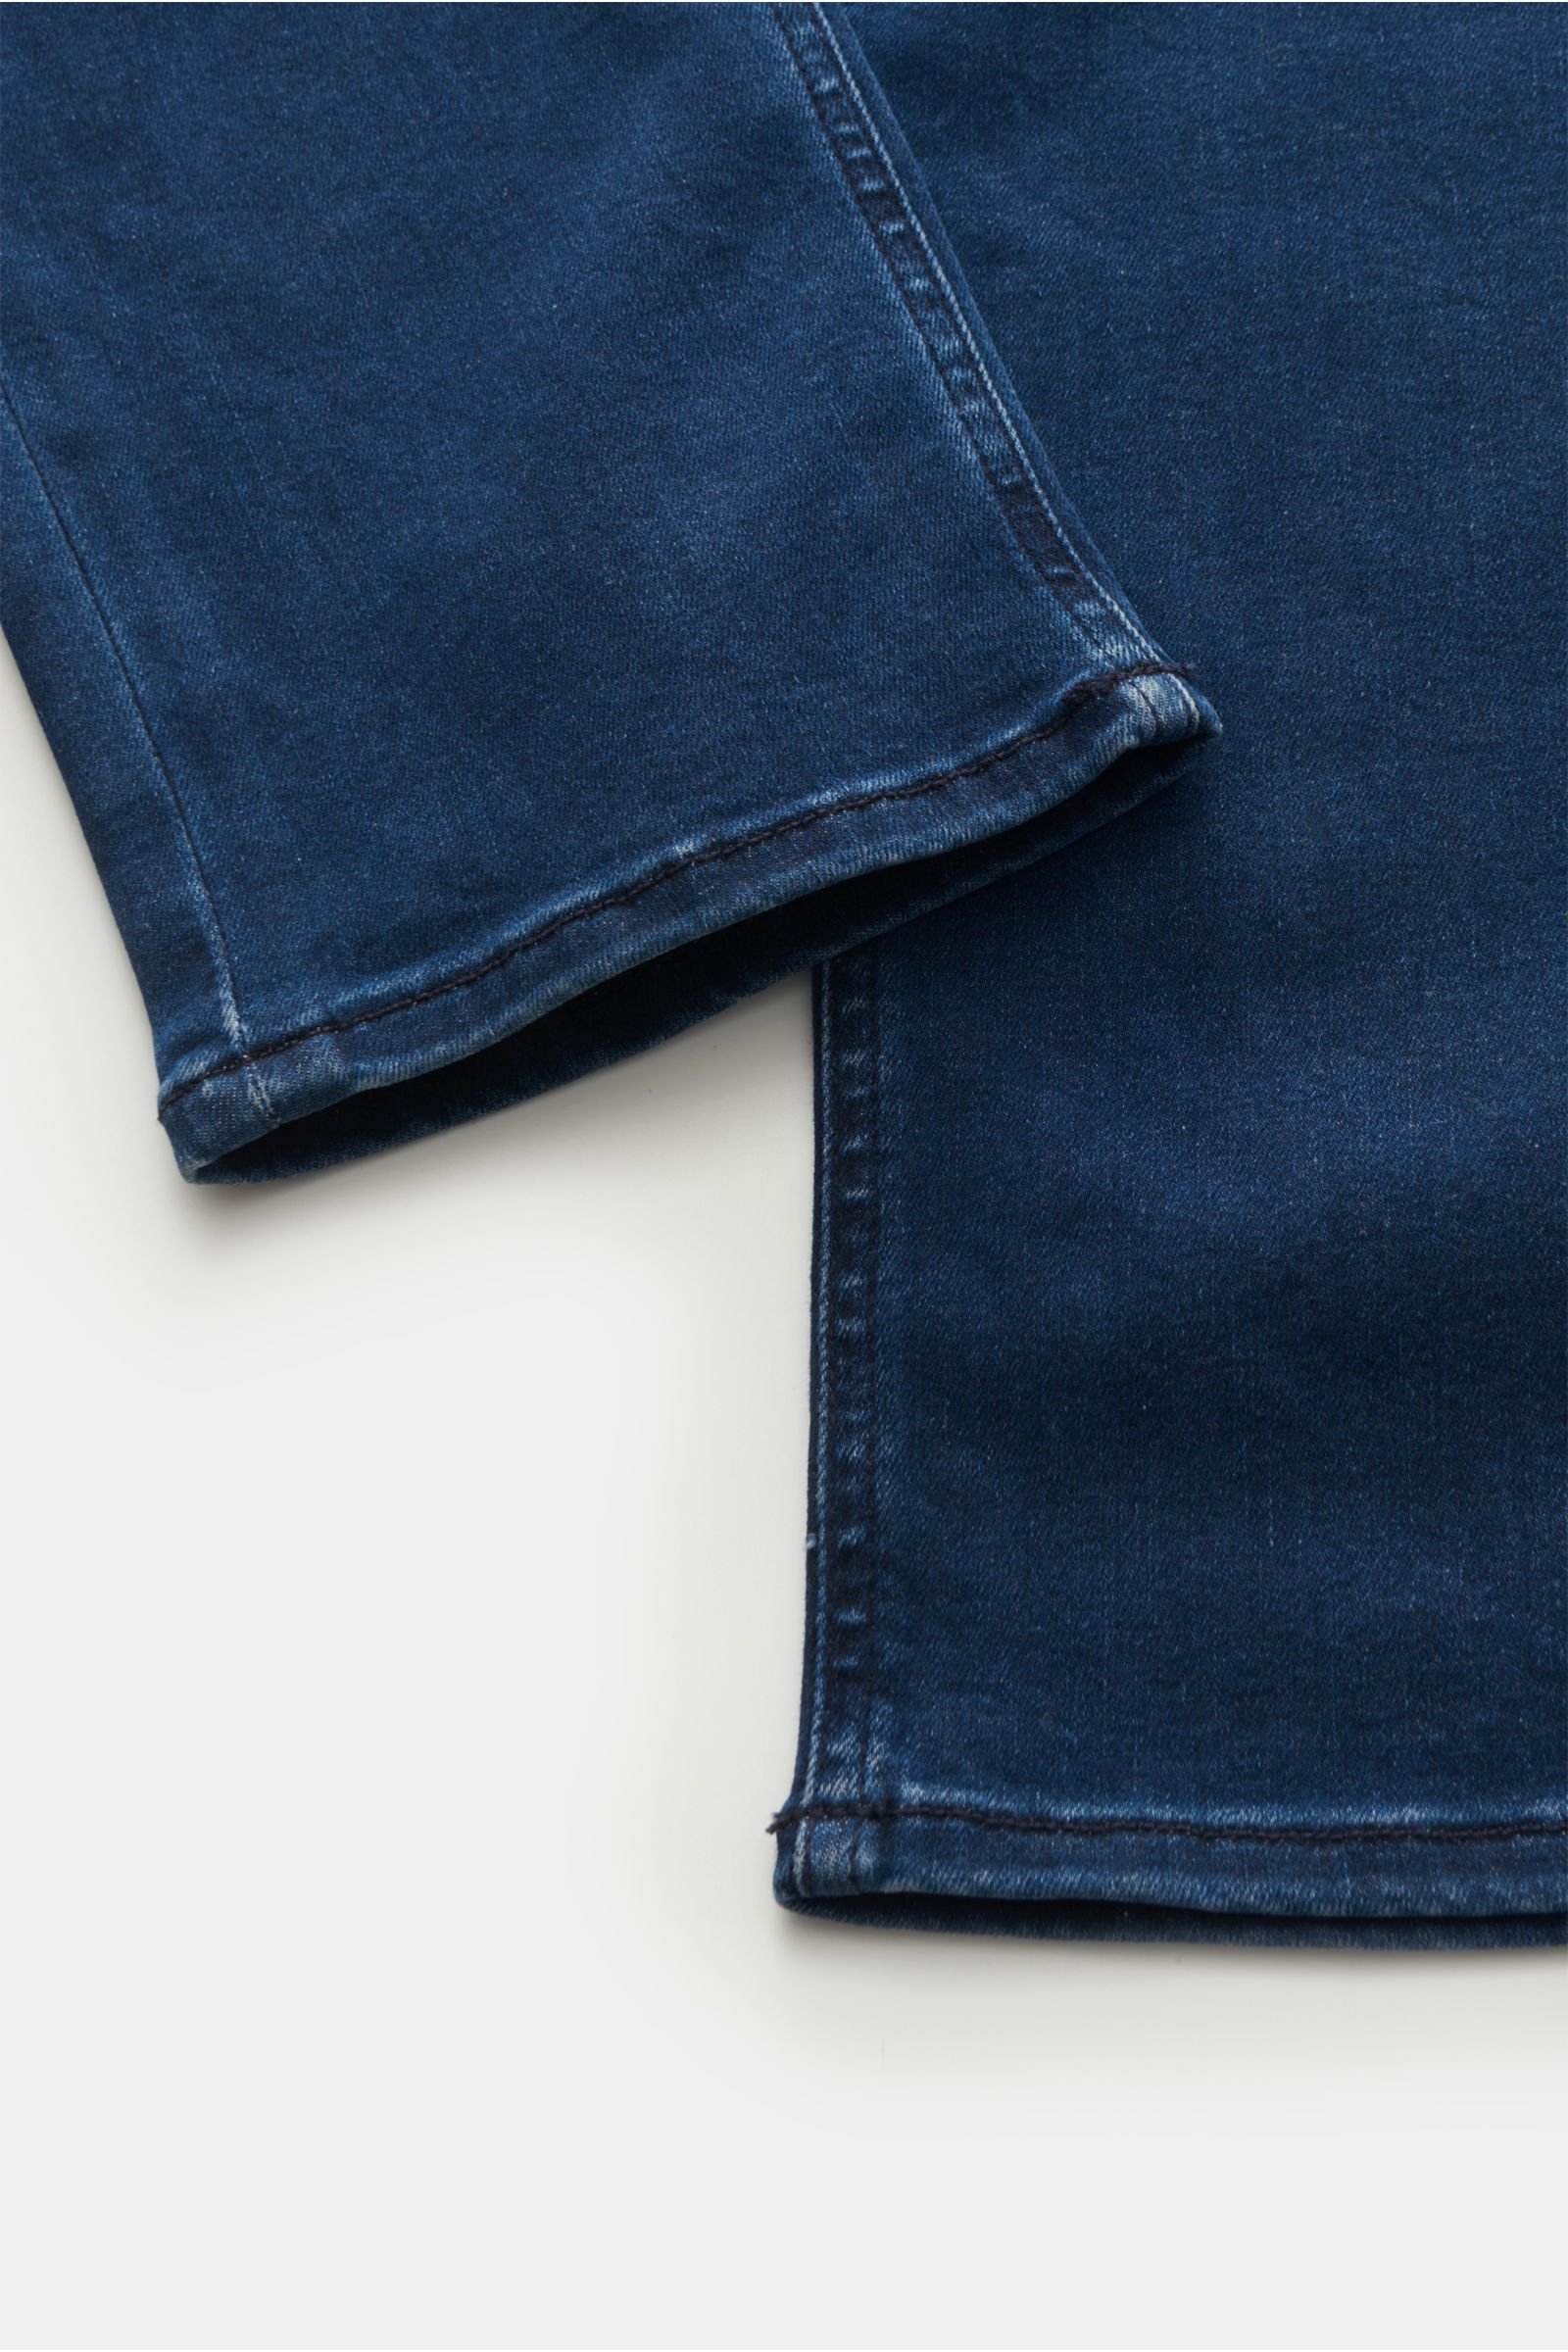 HANDPICKED jeans 'Orvieto' navy | BRAUN Hamburg